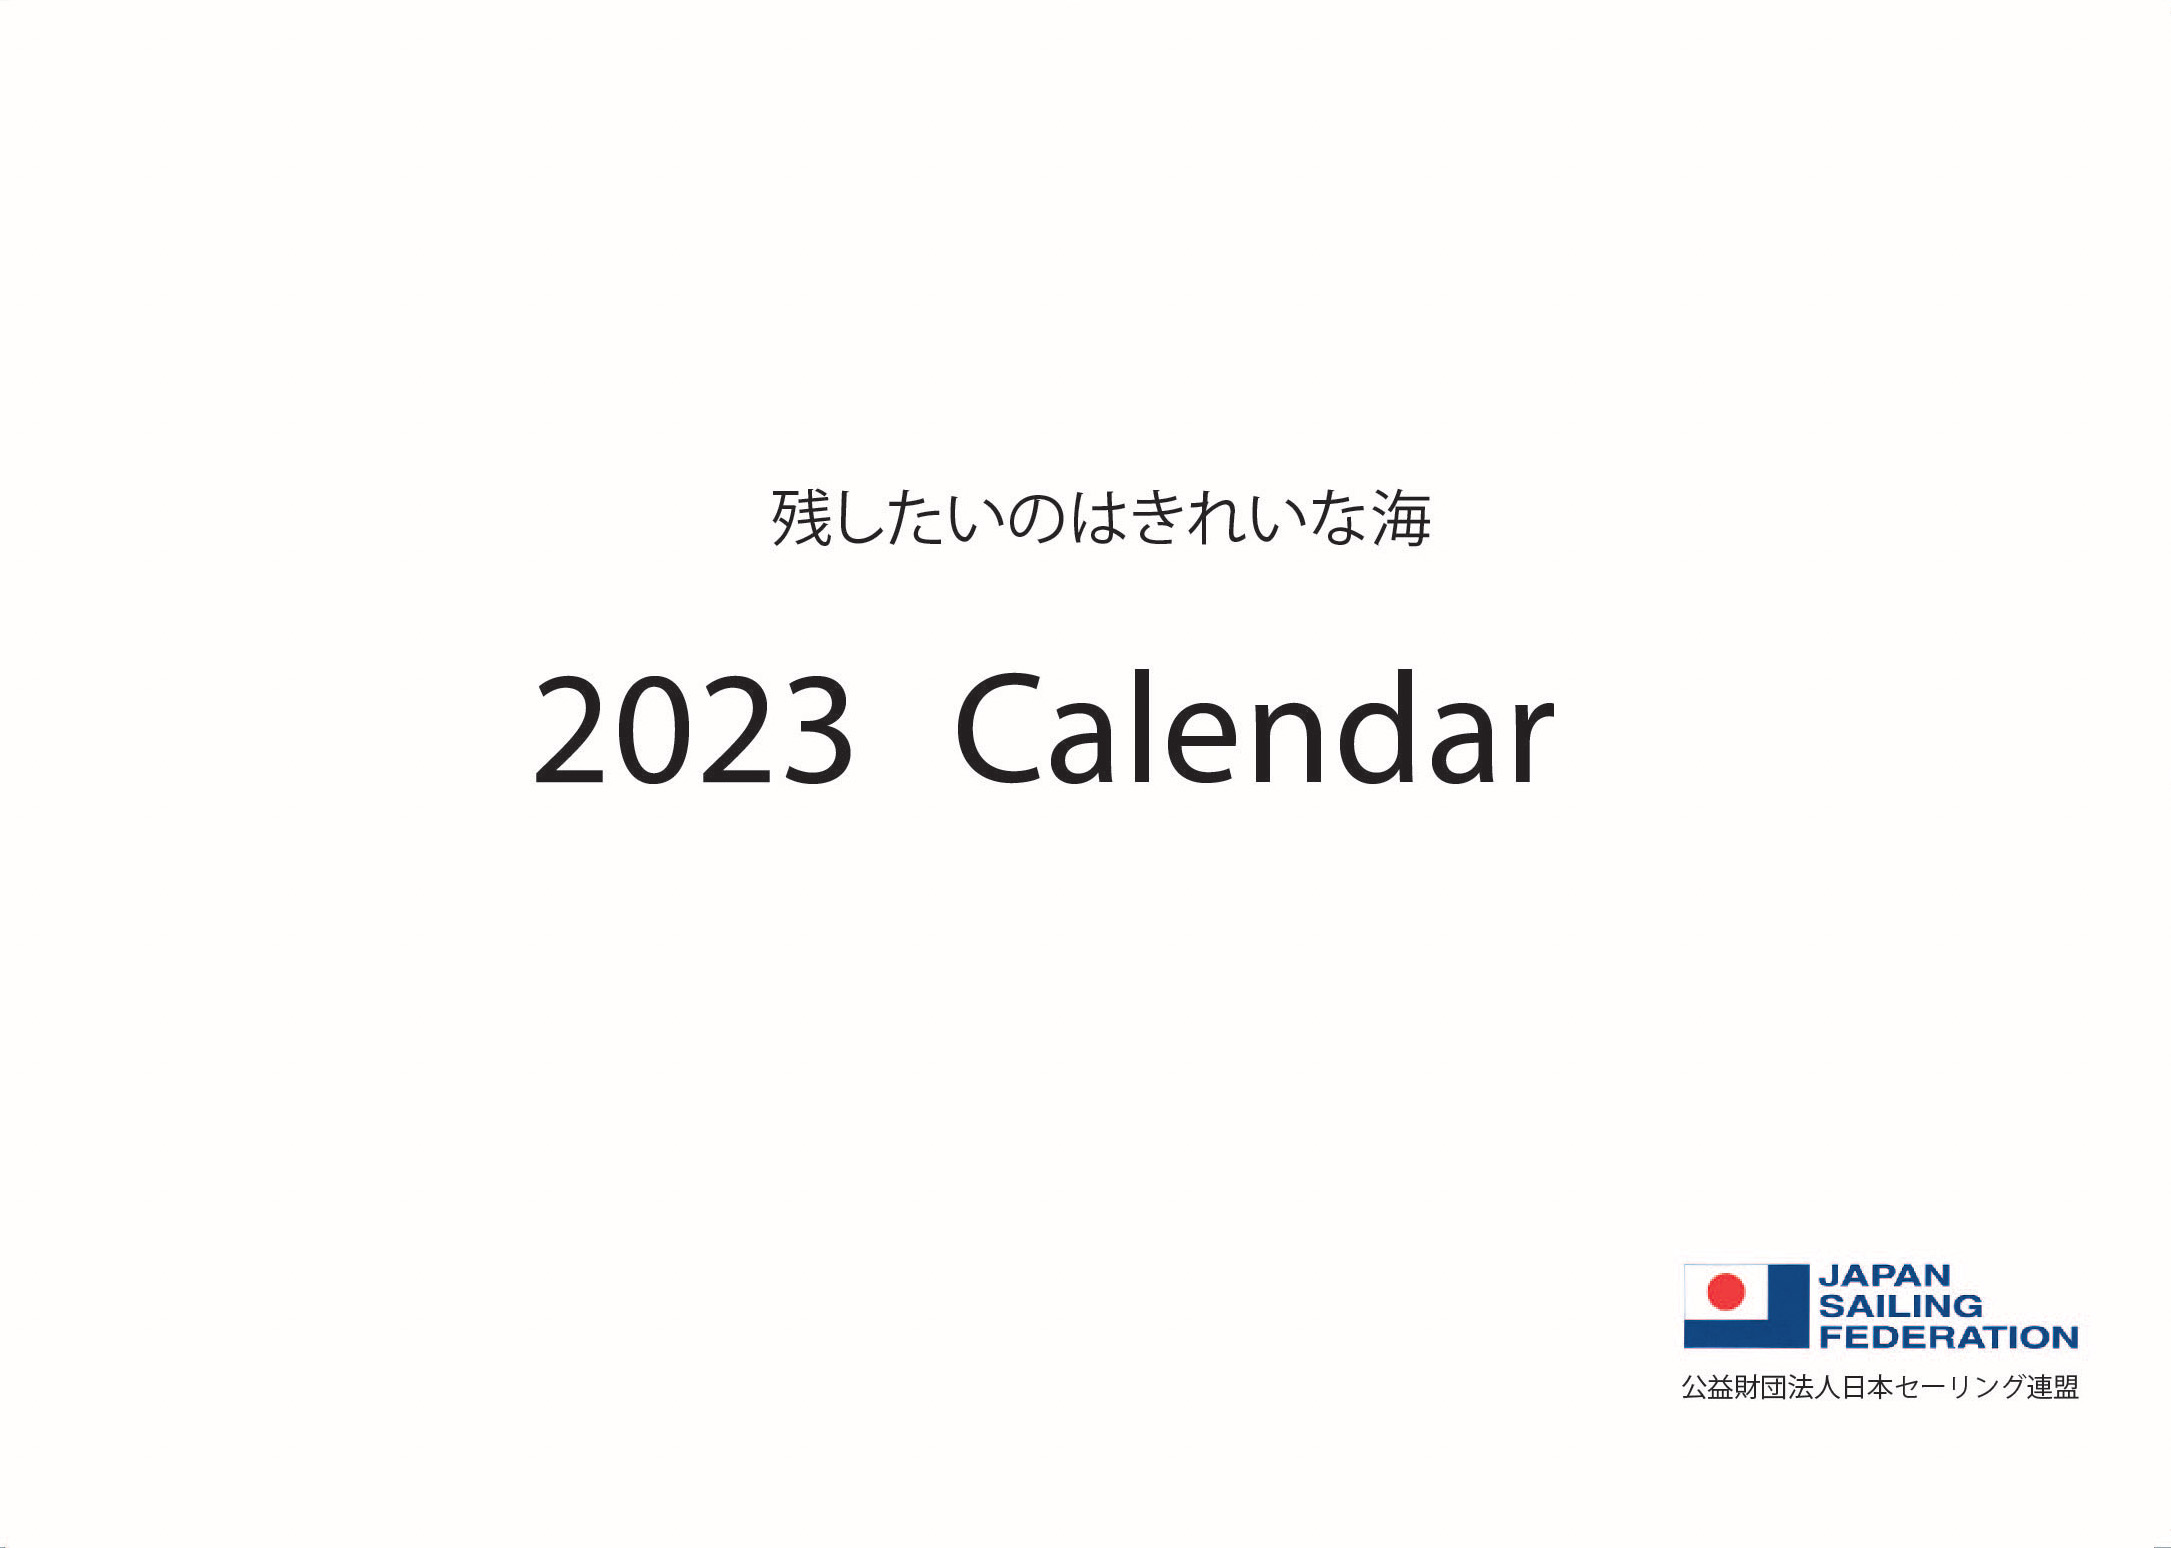 JSAF 2023 カレンダー 11月16日販売開始予定です。